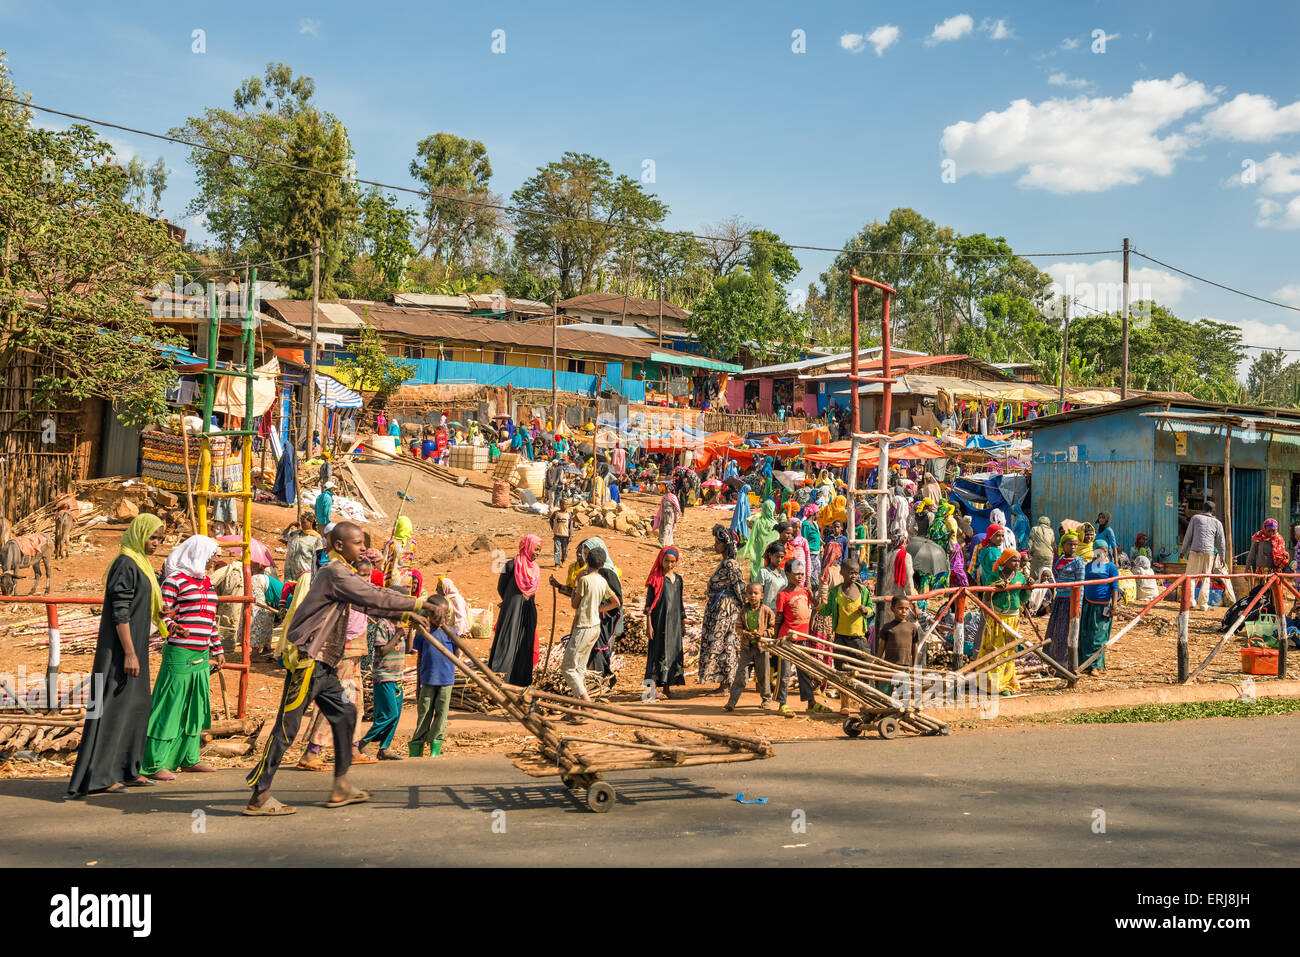 Beliebtesten und überfüllten afrikanischen Markt in der Nähe von Addis Abeba, Äthiopien mit viele Menschen kaufen und verkaufen. Stockfoto